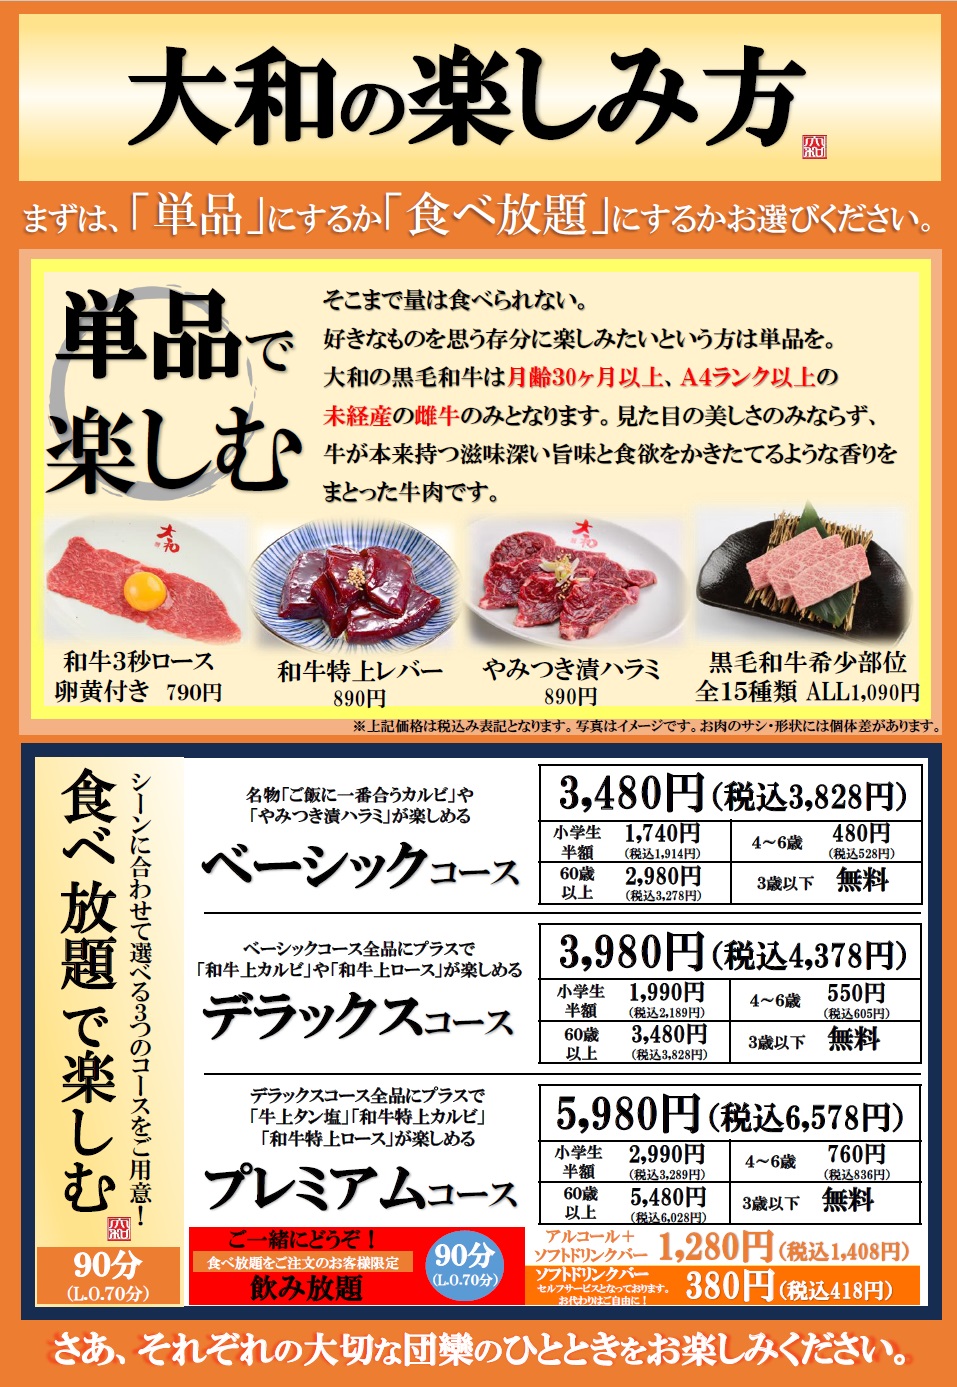 『焼肉DINING大和』では、食べ放題の販売を開始いたします。